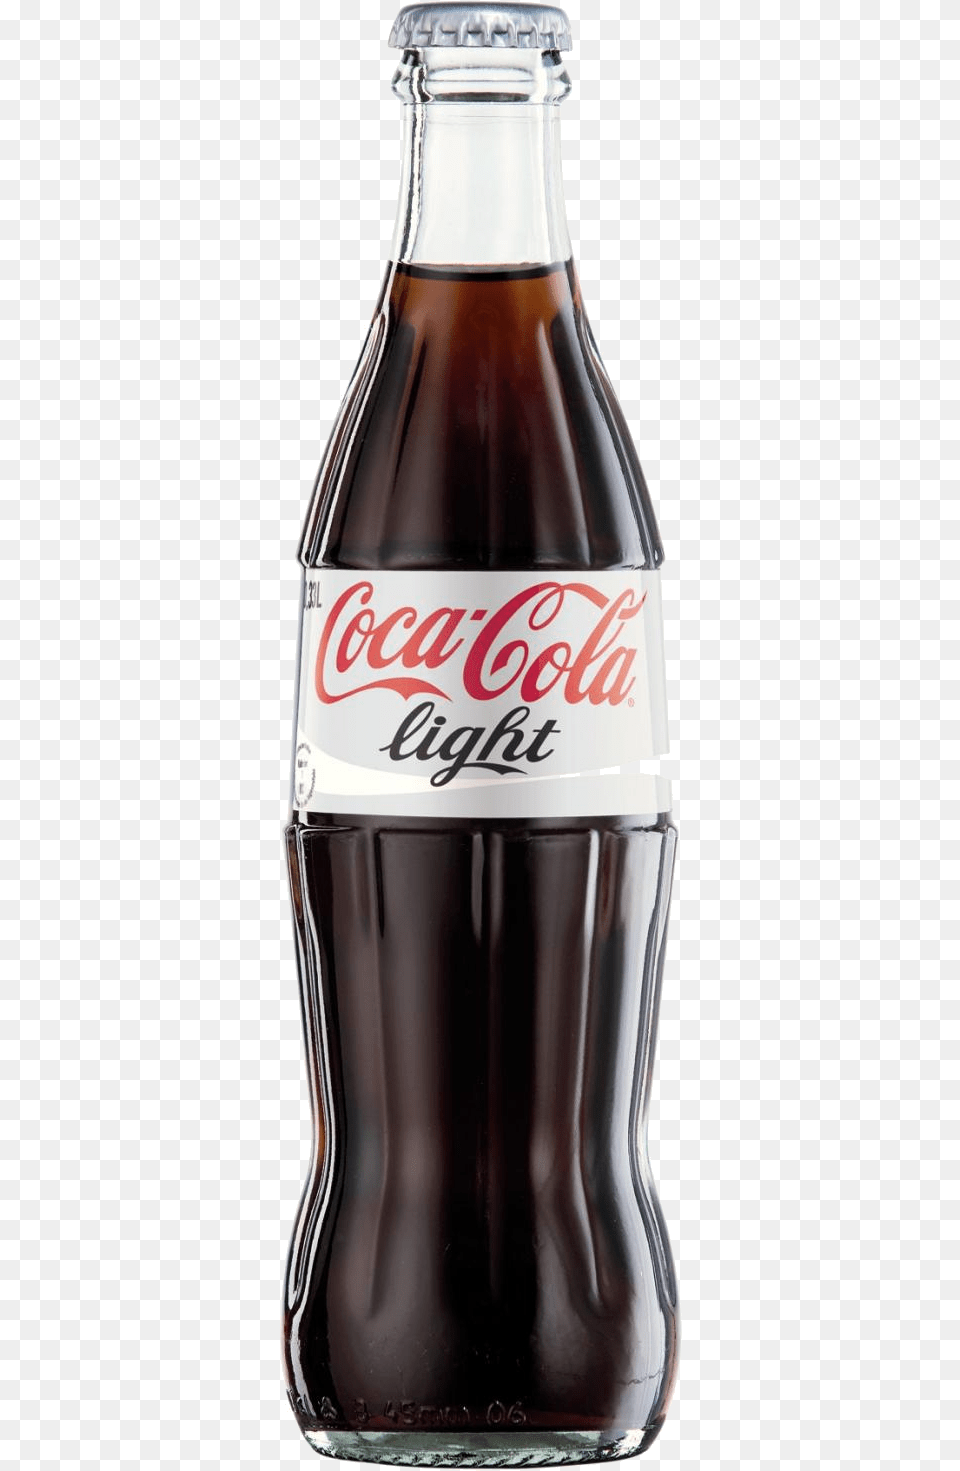 Coca Cola In High Resolution Coca Cola Light, Beverage, Coke, Soda, Alcohol Png